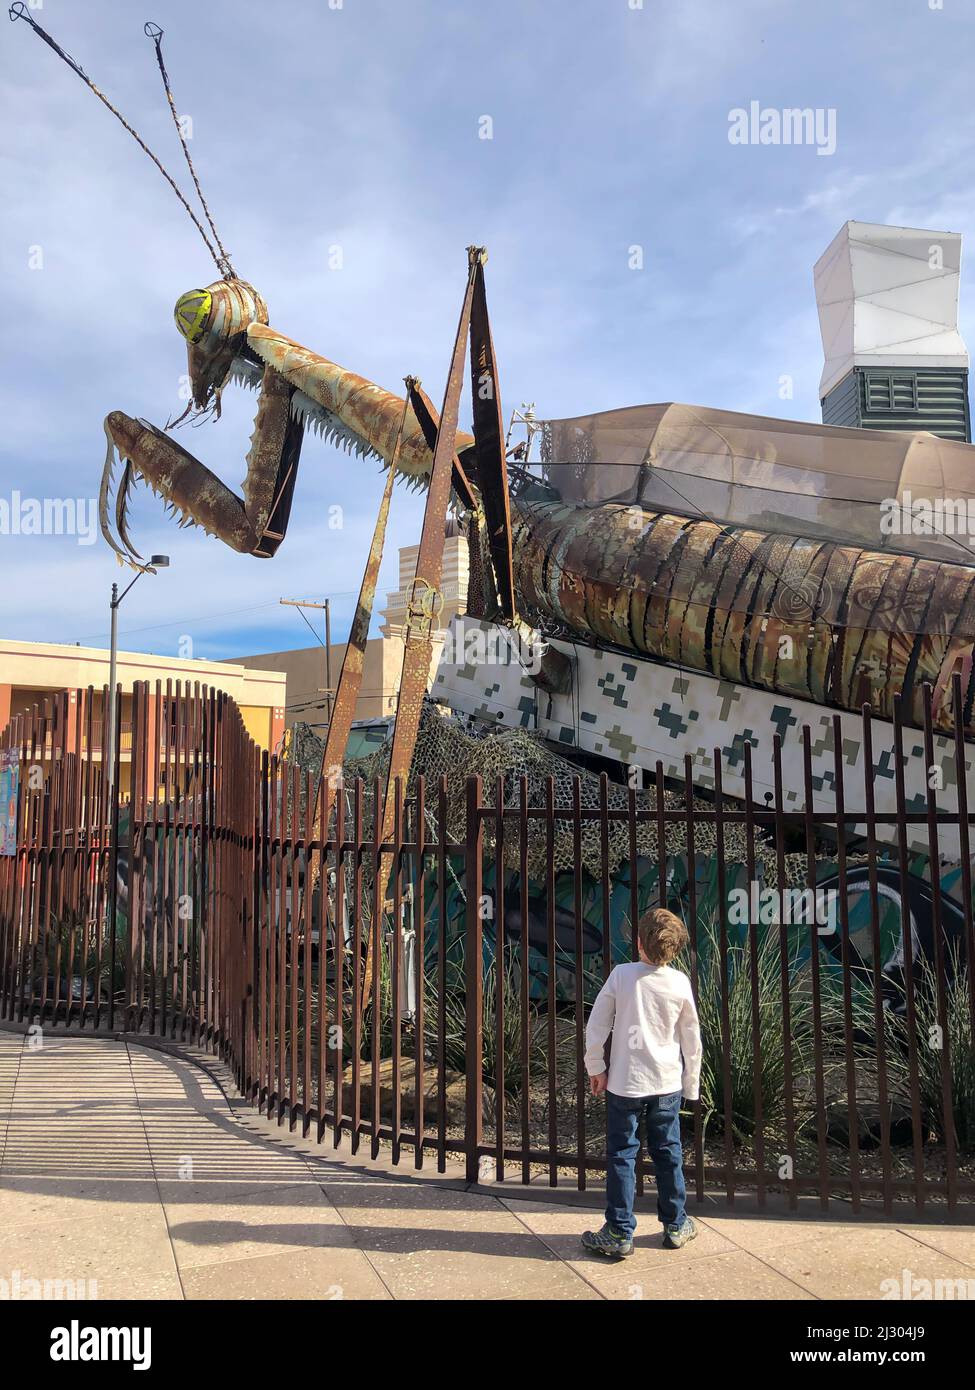 Downtown Container Park, Las Vegas, Nevada, US - 1,2020 - Praying Mantis Metallkunstskulptur mit einem Kind, das davor steht. Stockfoto